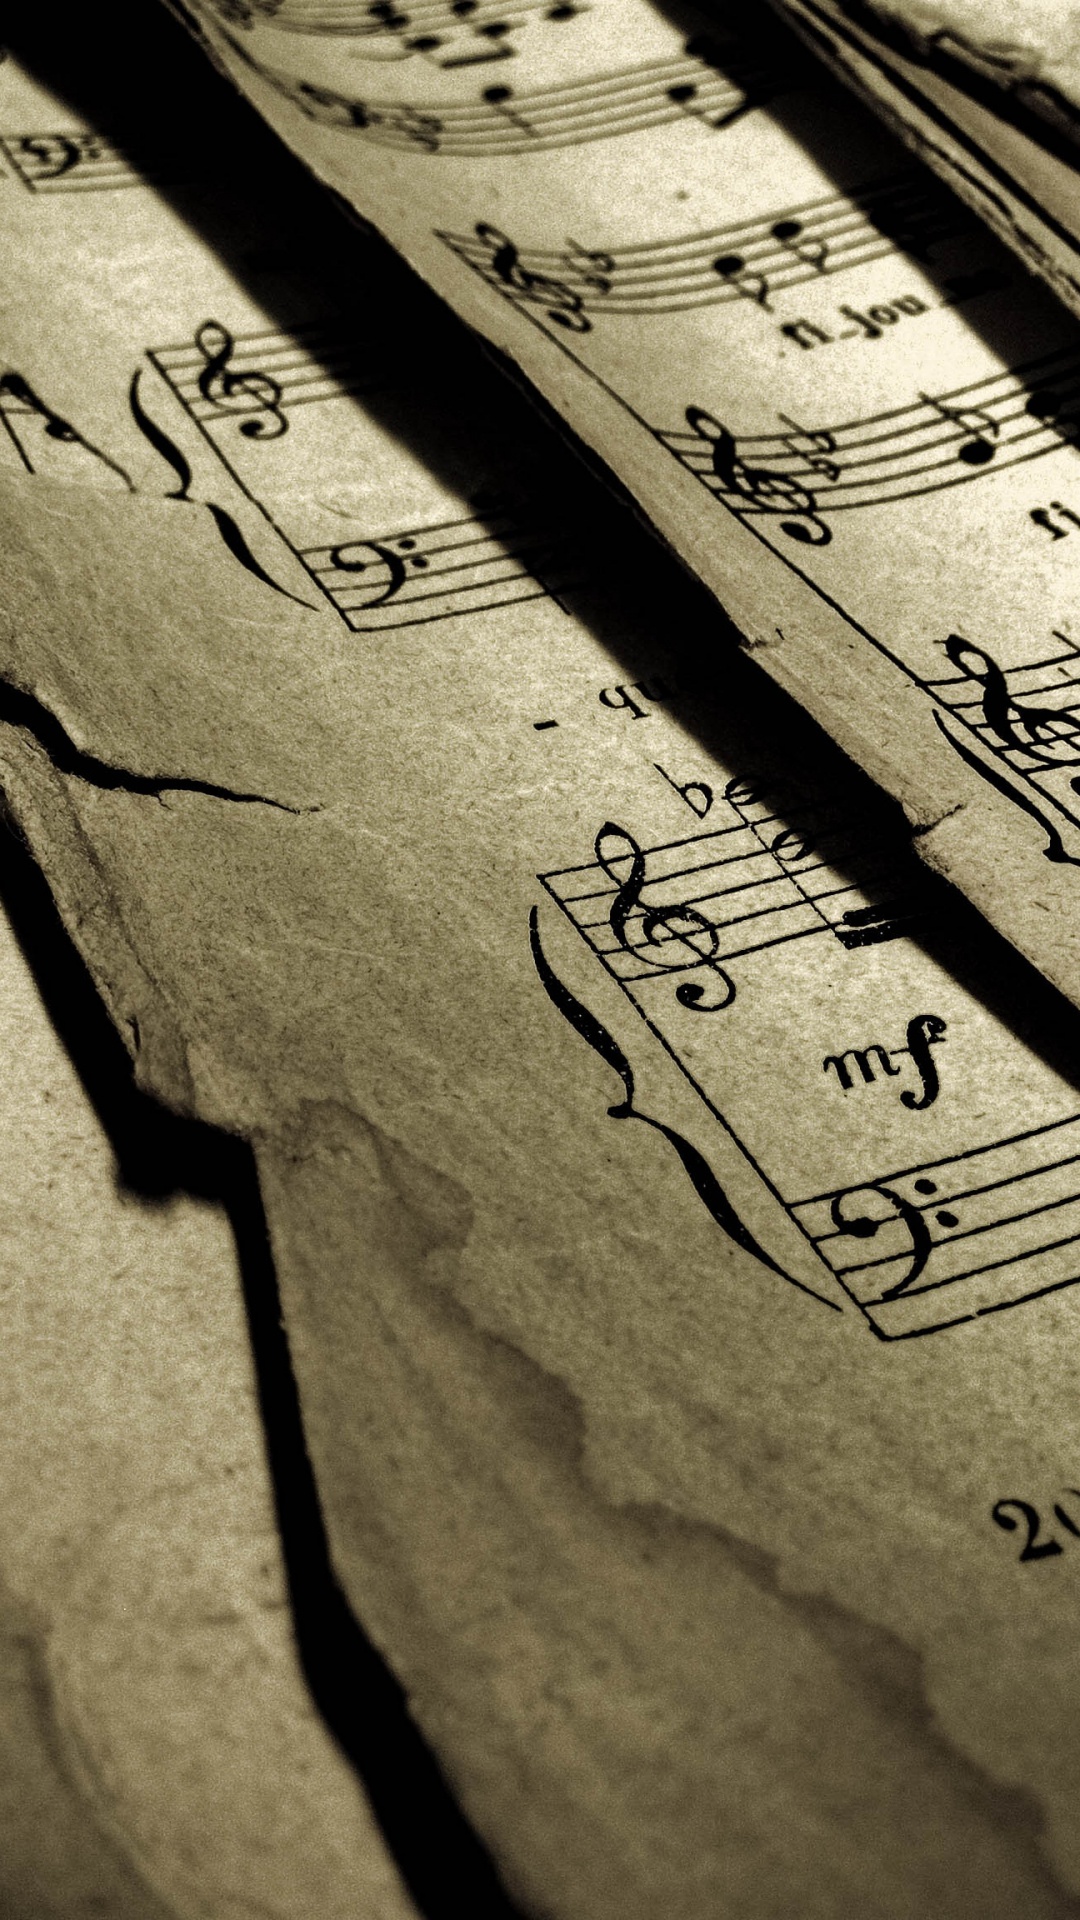 片音乐, 古典音乐, 木, 文本, 书法 壁纸 1080x1920 允许